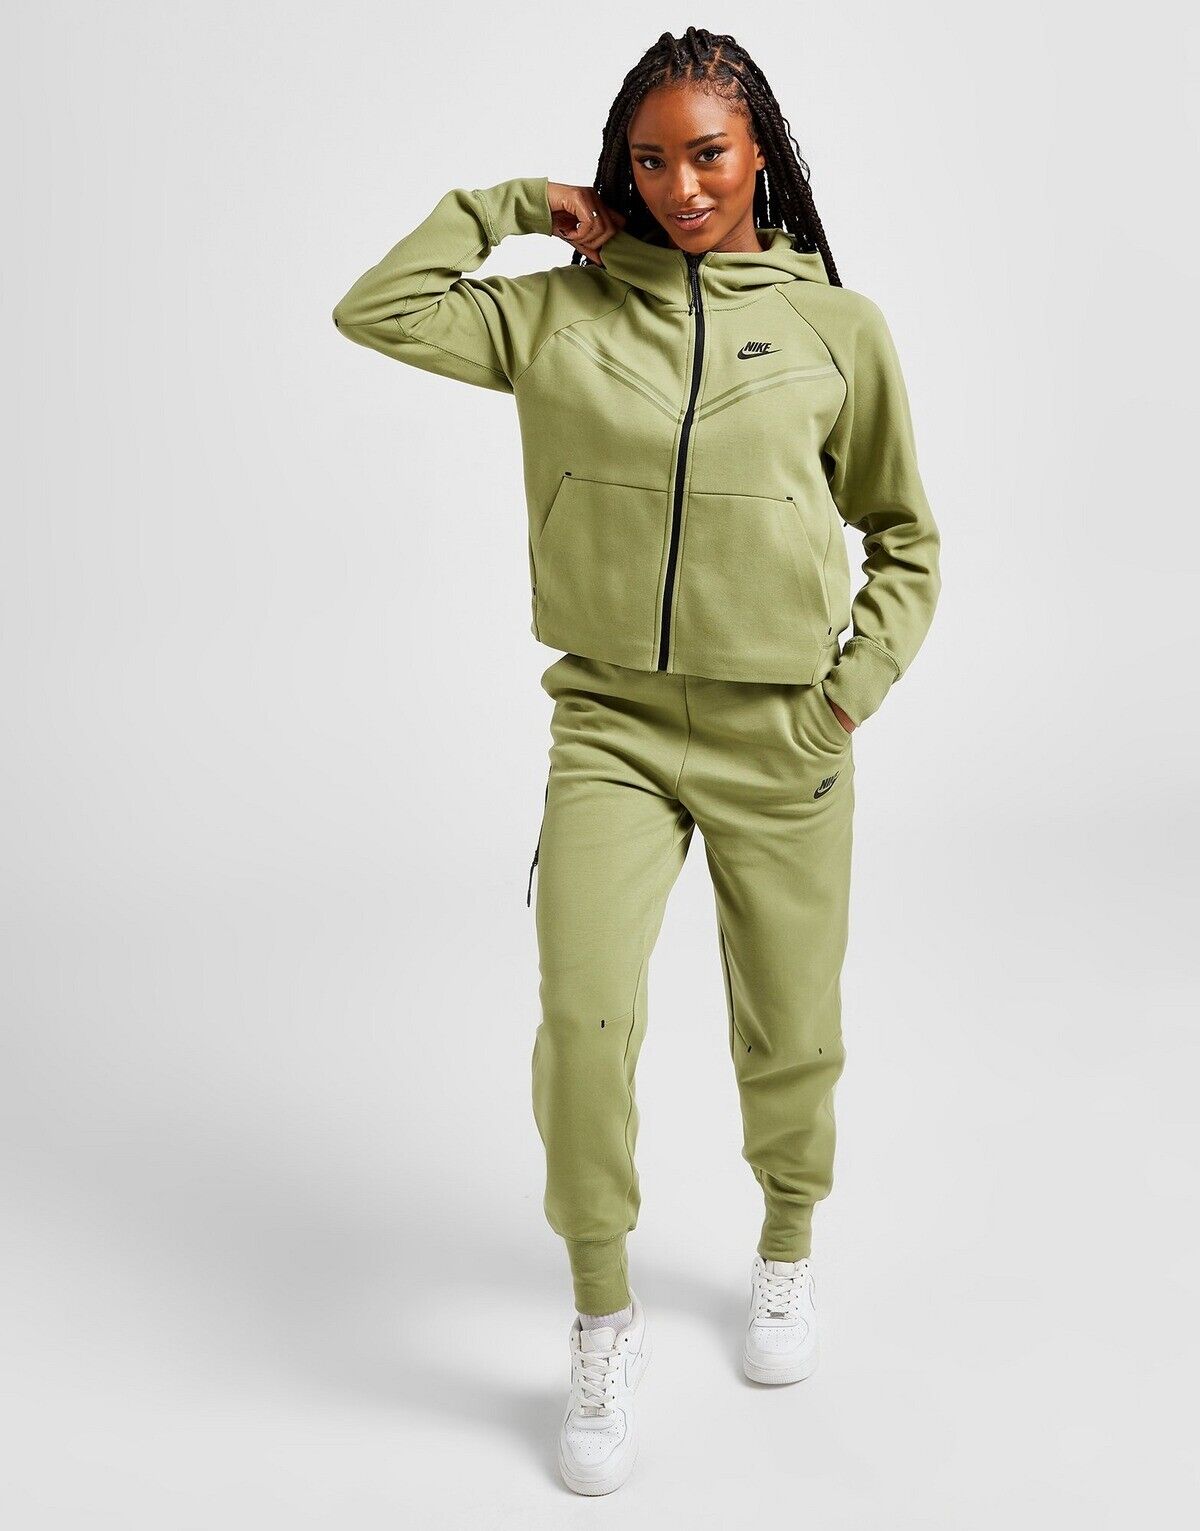 Nike Dames Green Dames shoppen? | Soccerfanshop BE